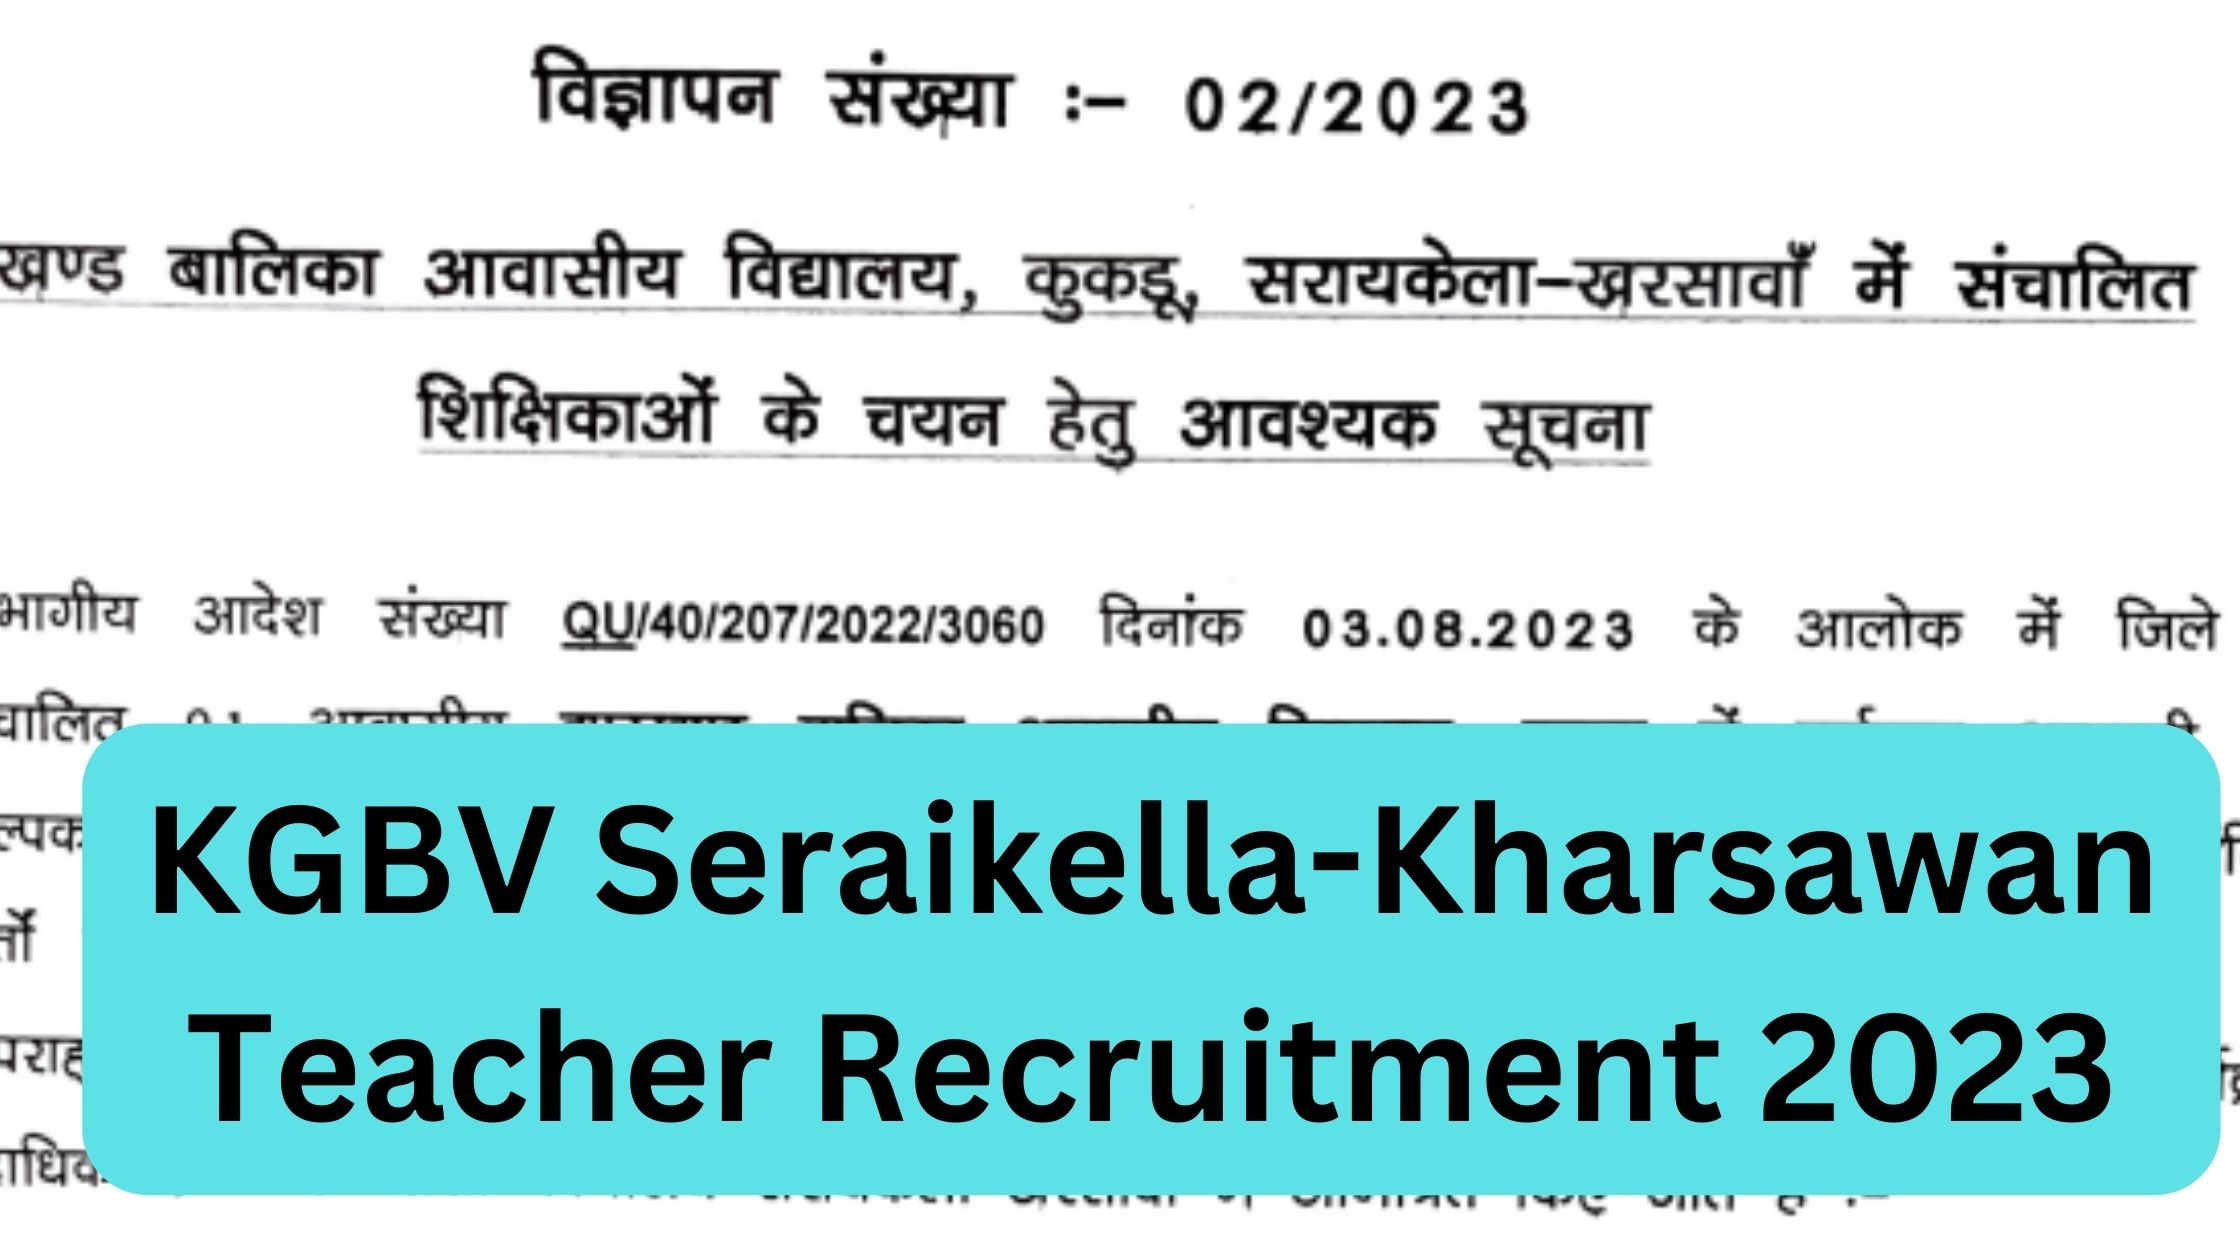 KGBV Seraikella-Kharsawan Teacher Recruitment 2023